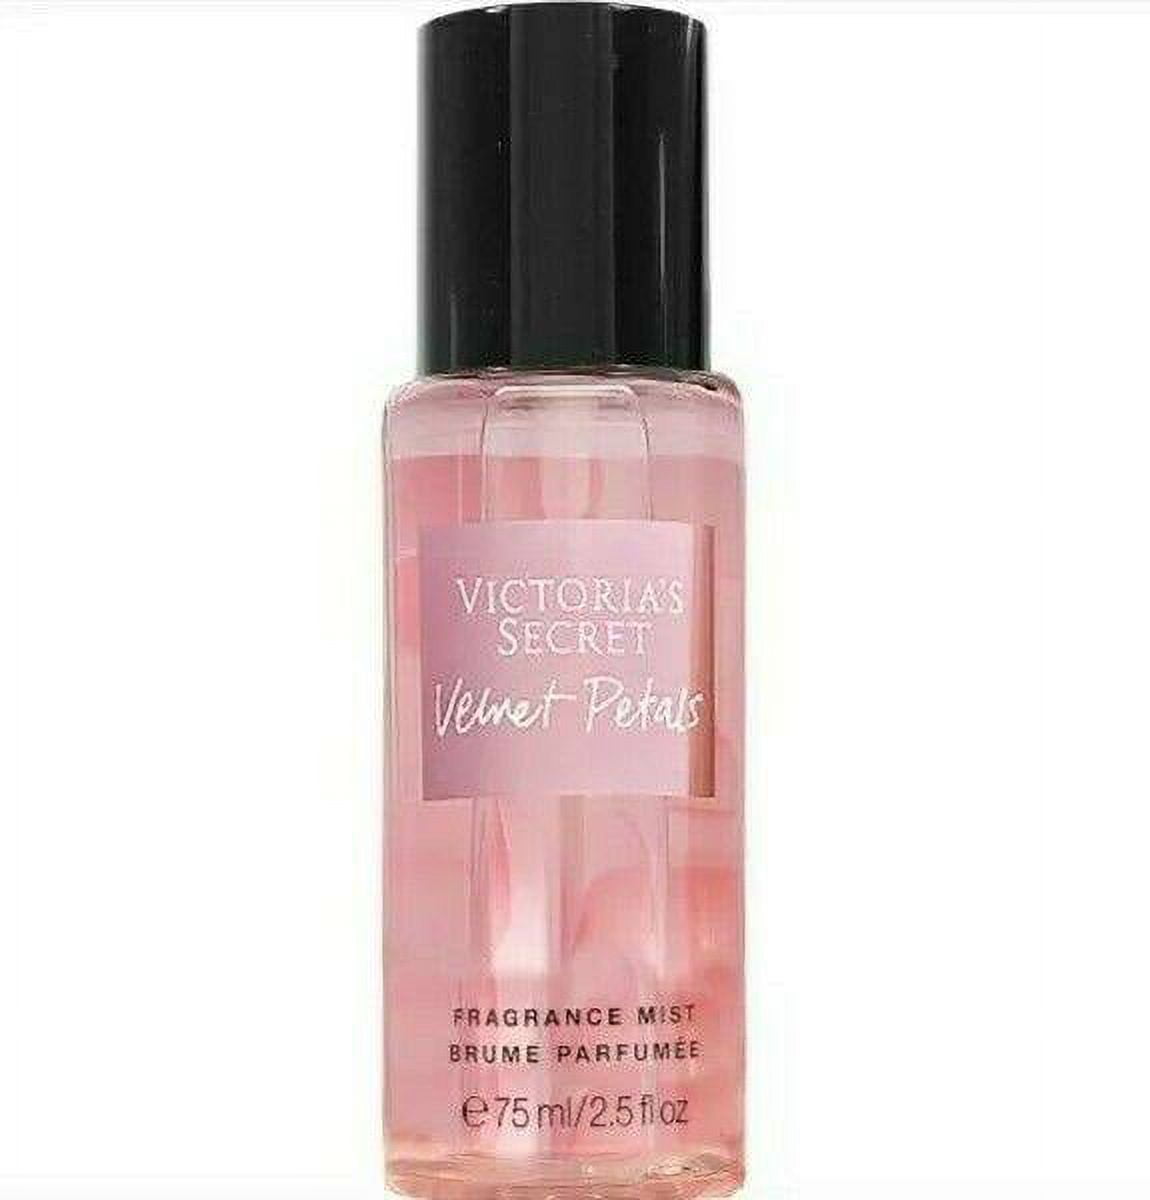 Victoria Secret Velvet Petals Colonia Body Splash ORIGINAL